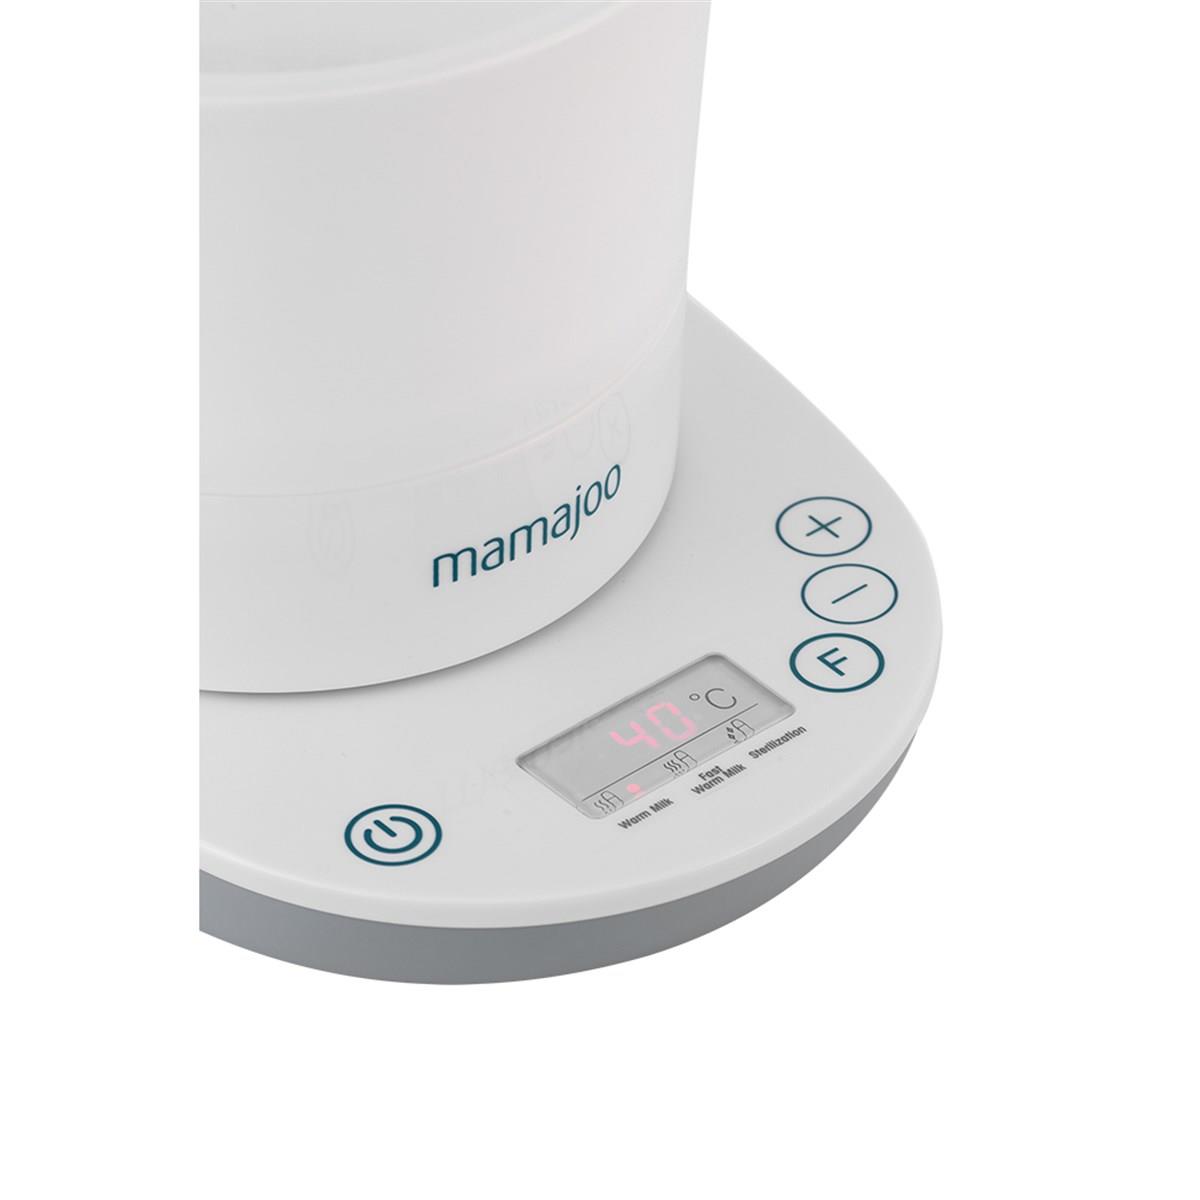 Mamaojoo 3 İşlevli Buhar Sterilizatörü & Biberon Isıtıcı